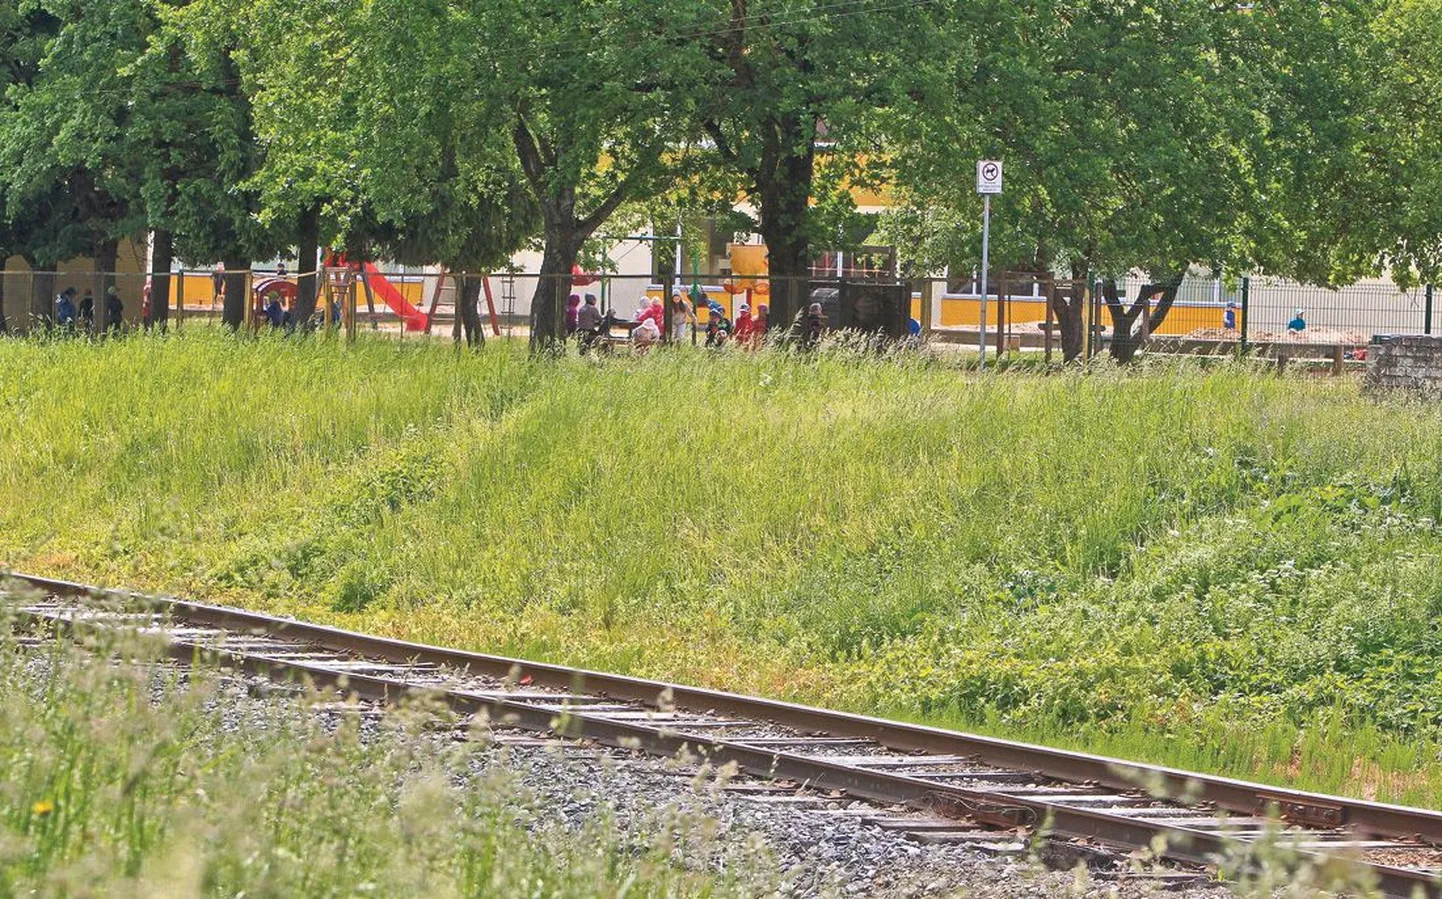 Ropka tänaval asuv Piilupesa lasteaed piirneb raudteega, kus 17. mai hommikul laste õuemineku ajal tõrjuti 
glüfosaadiga umbrohtu.